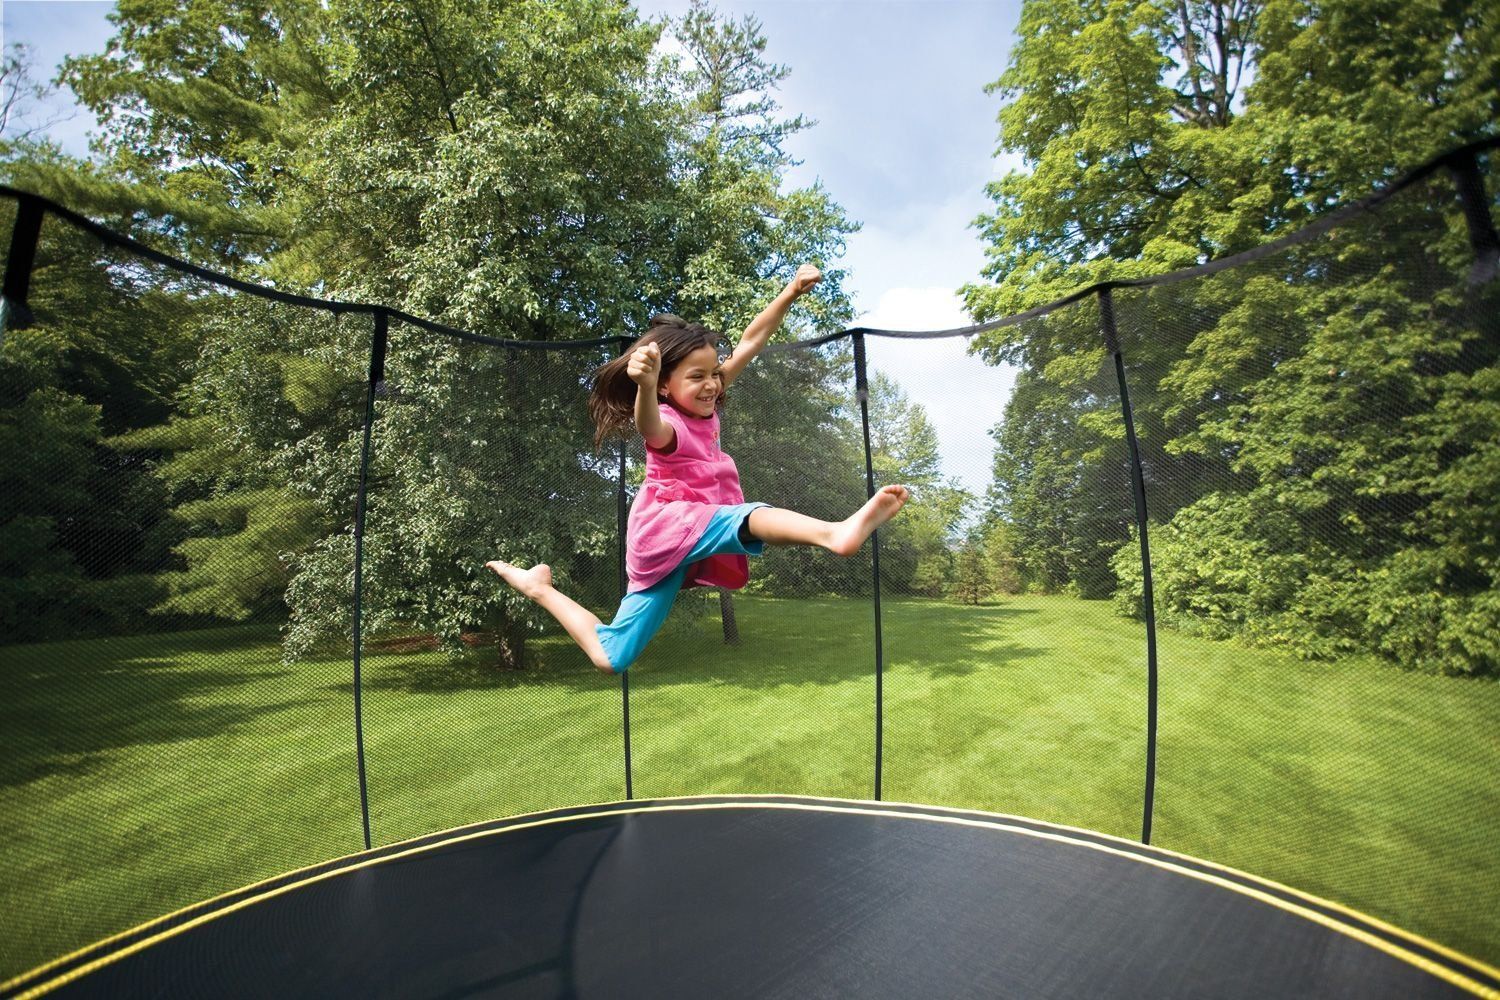 Les meilleurs trampolines pour enfants et adultes en 2021